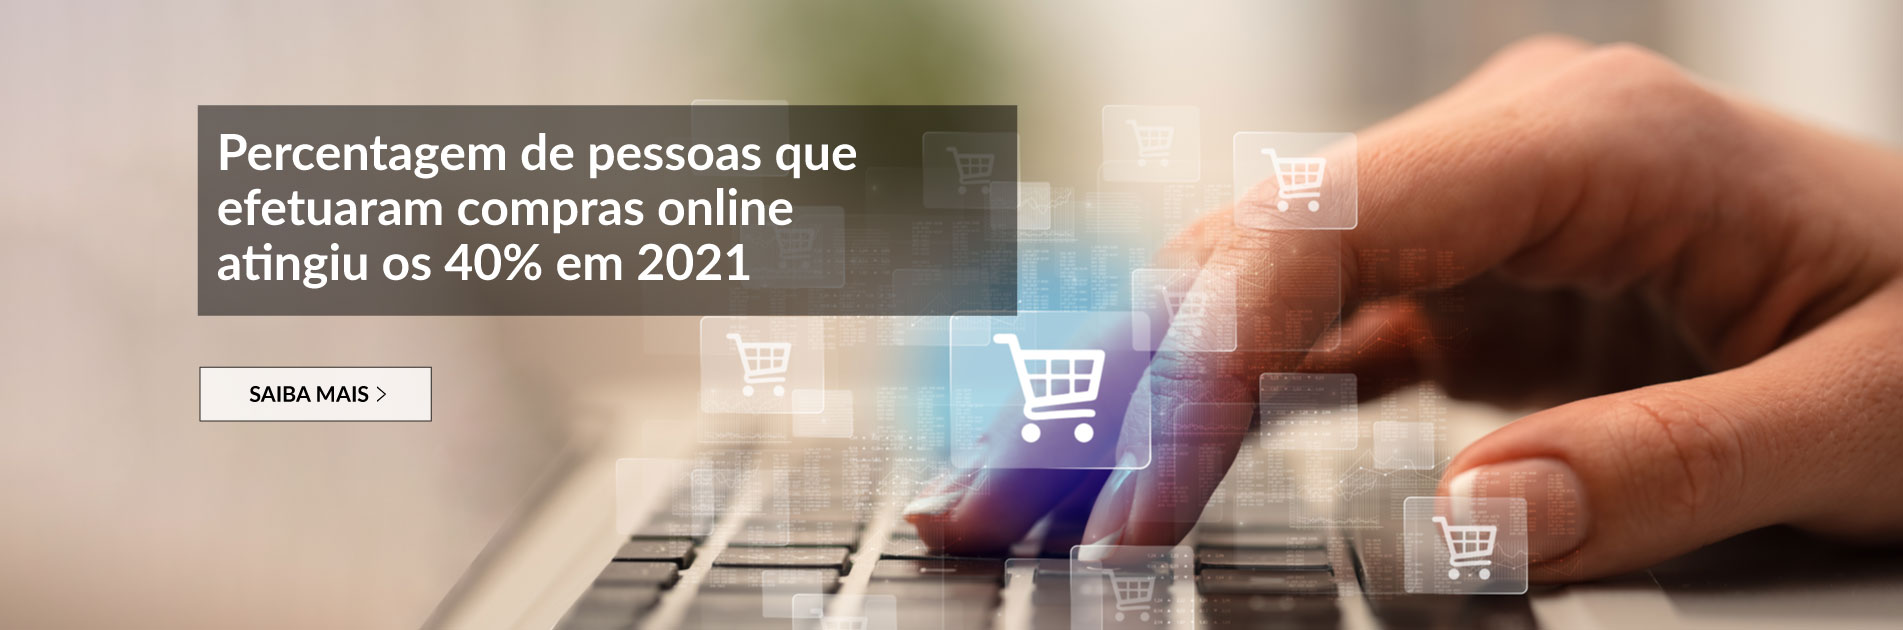 Percentagem de pessoas que efetuaram compras online atingiu os 40% em 2021